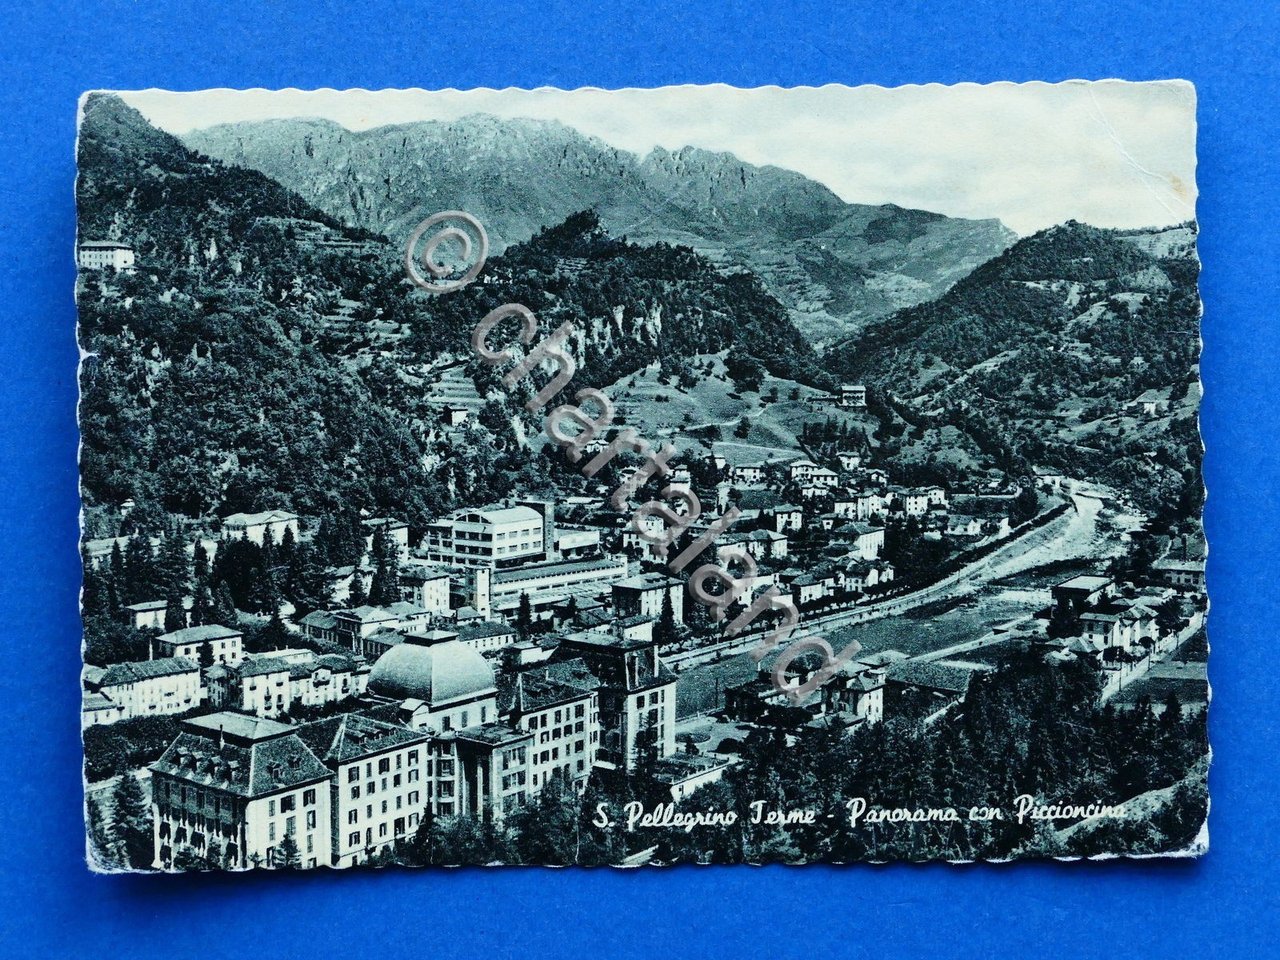 Cartolina S. Pellegrino Terme - Panorama con Piccioncina - 1956.